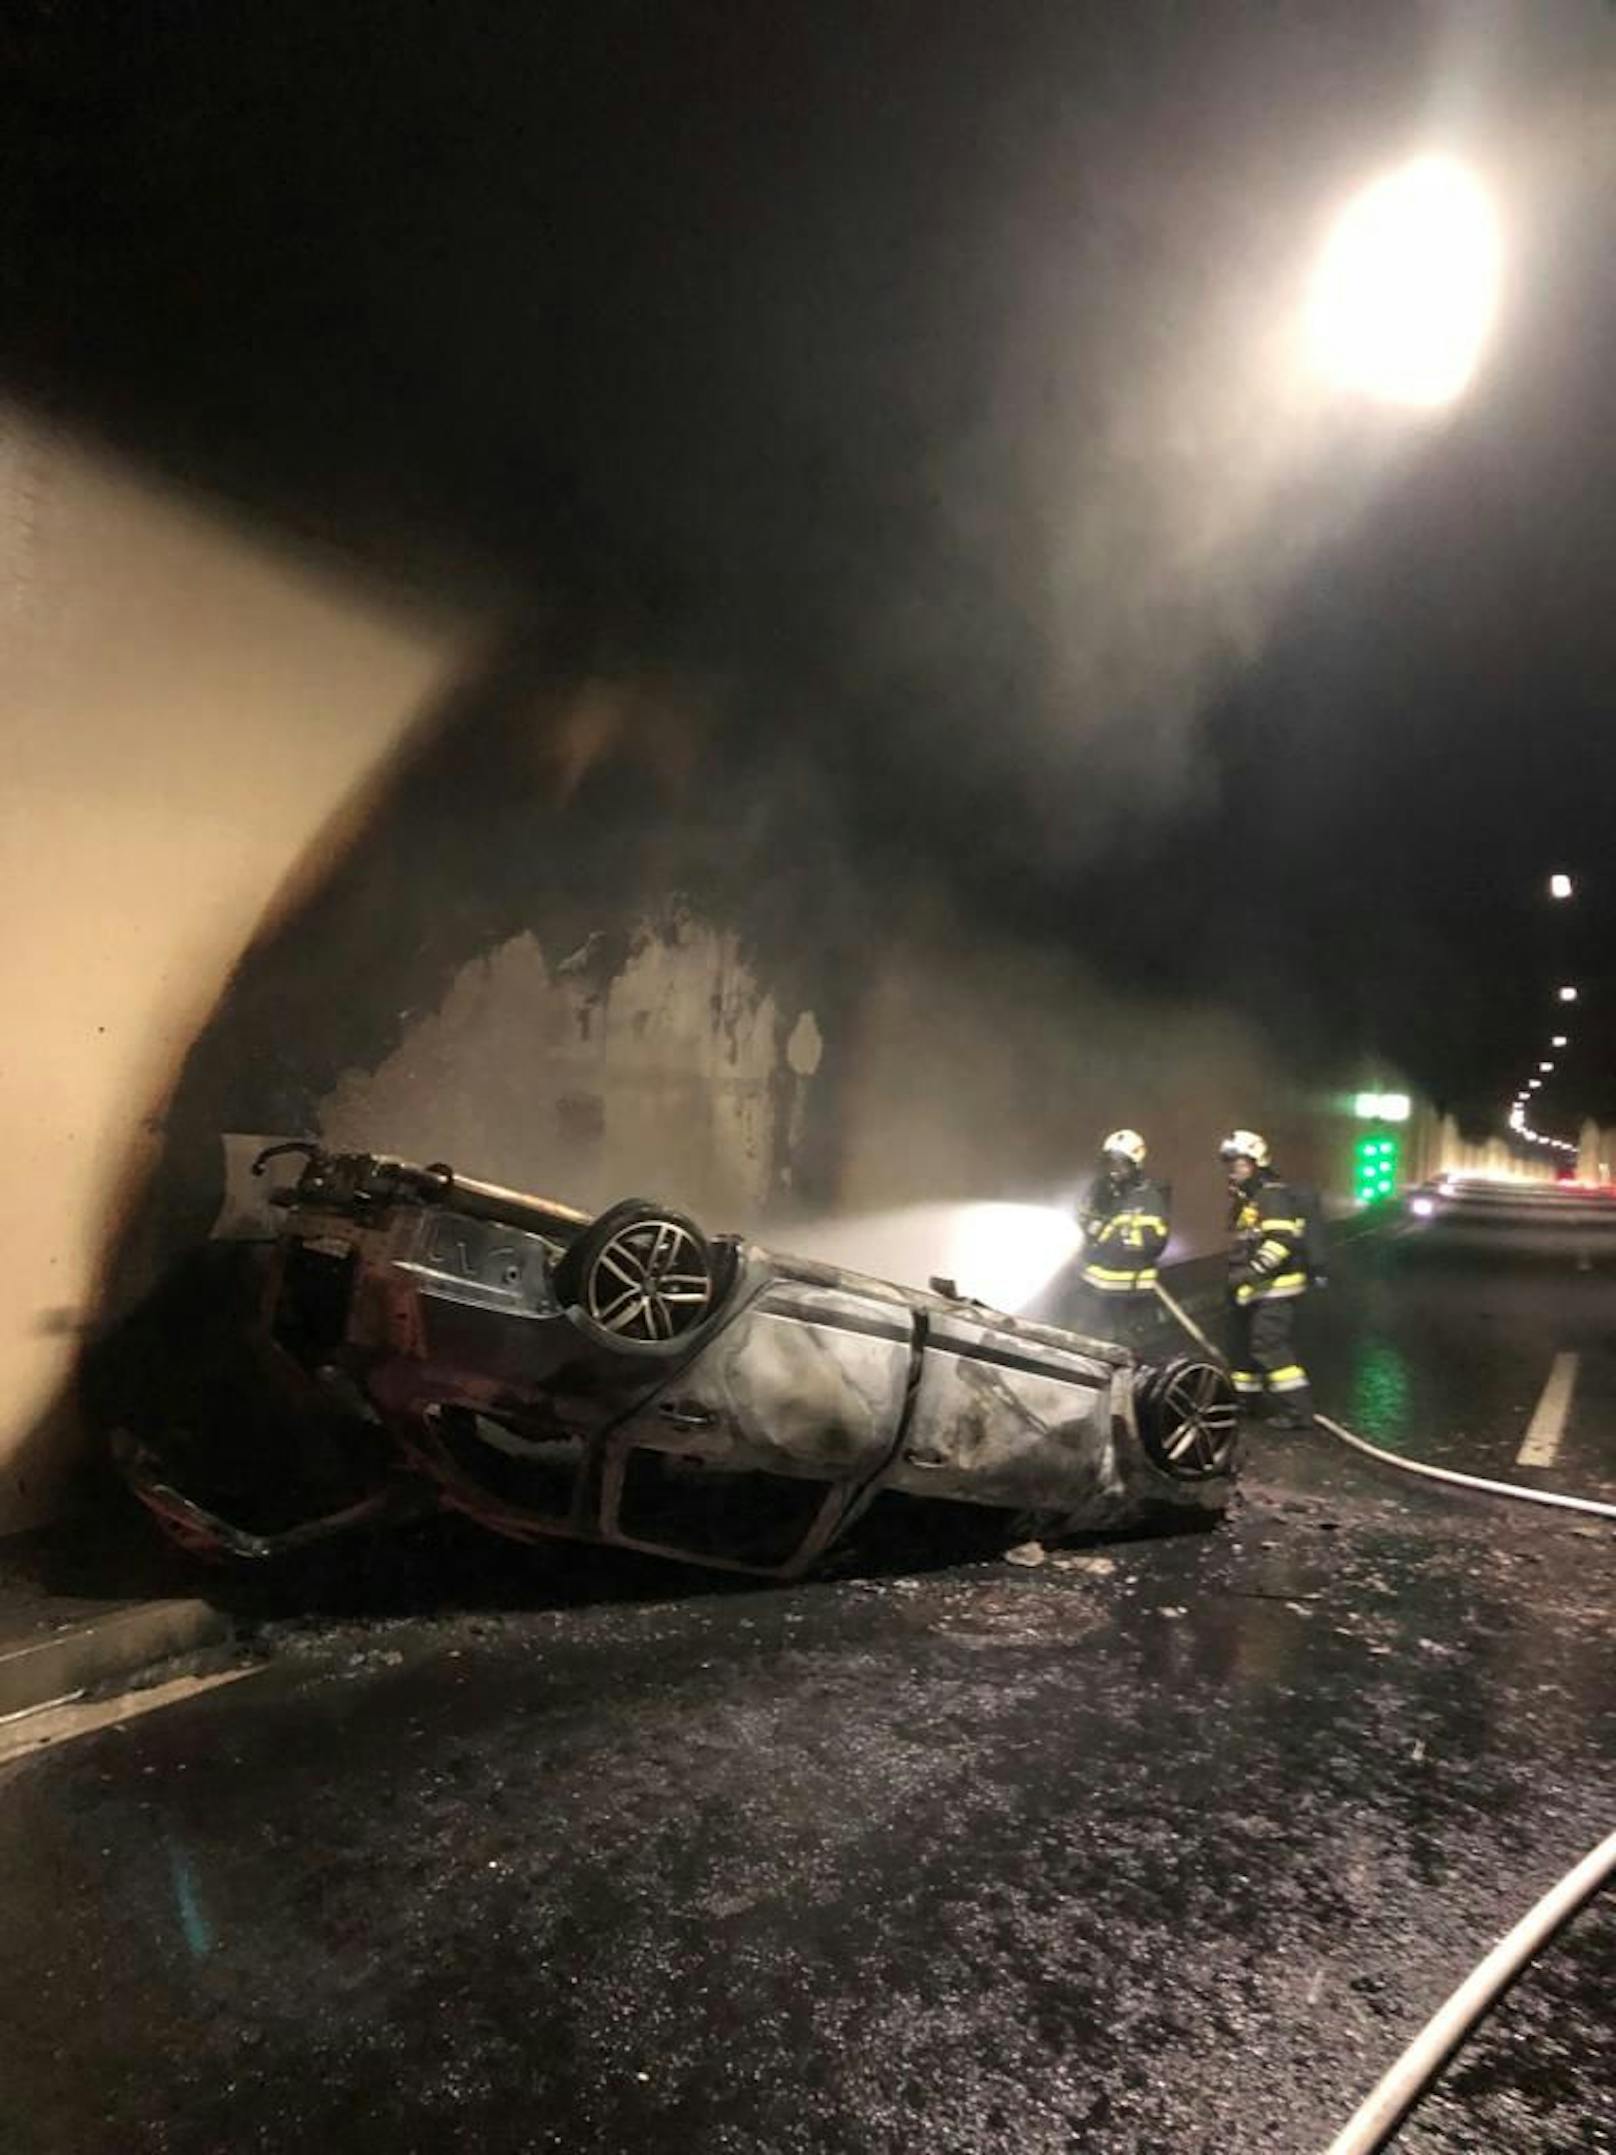 Ein 18 Jahre alter Autofahrer überschlug sich infolge mehrmals, das Fahrzeug kam auf dem Dach zum Liegen. Kurz nach dem Unfall ging das Auto in Flammen auf.